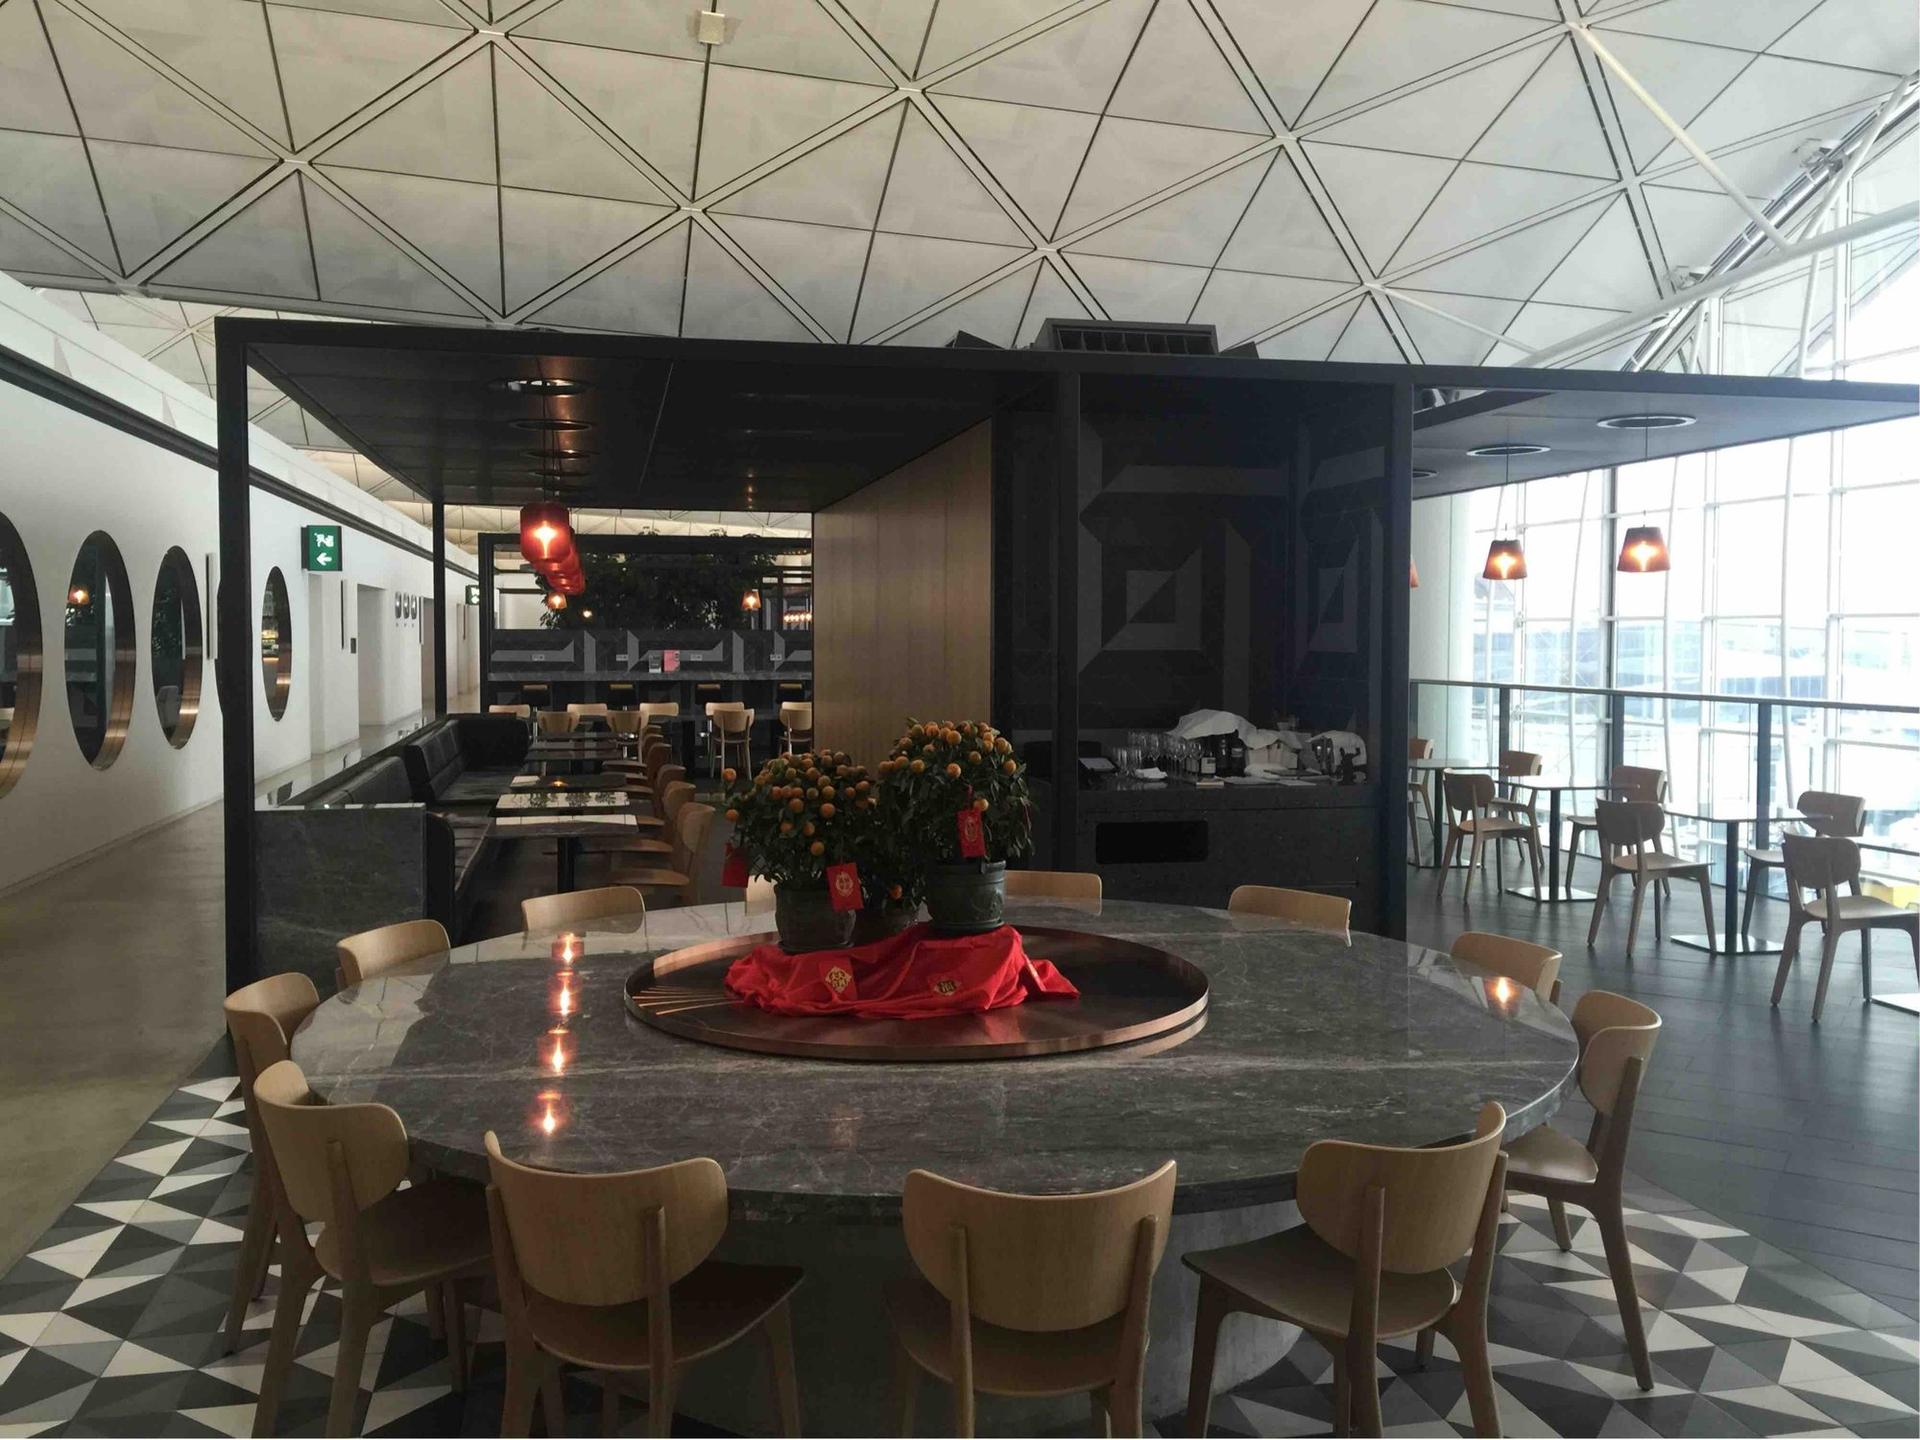 The Qantas Hong Kong Lounge image 32 of 99